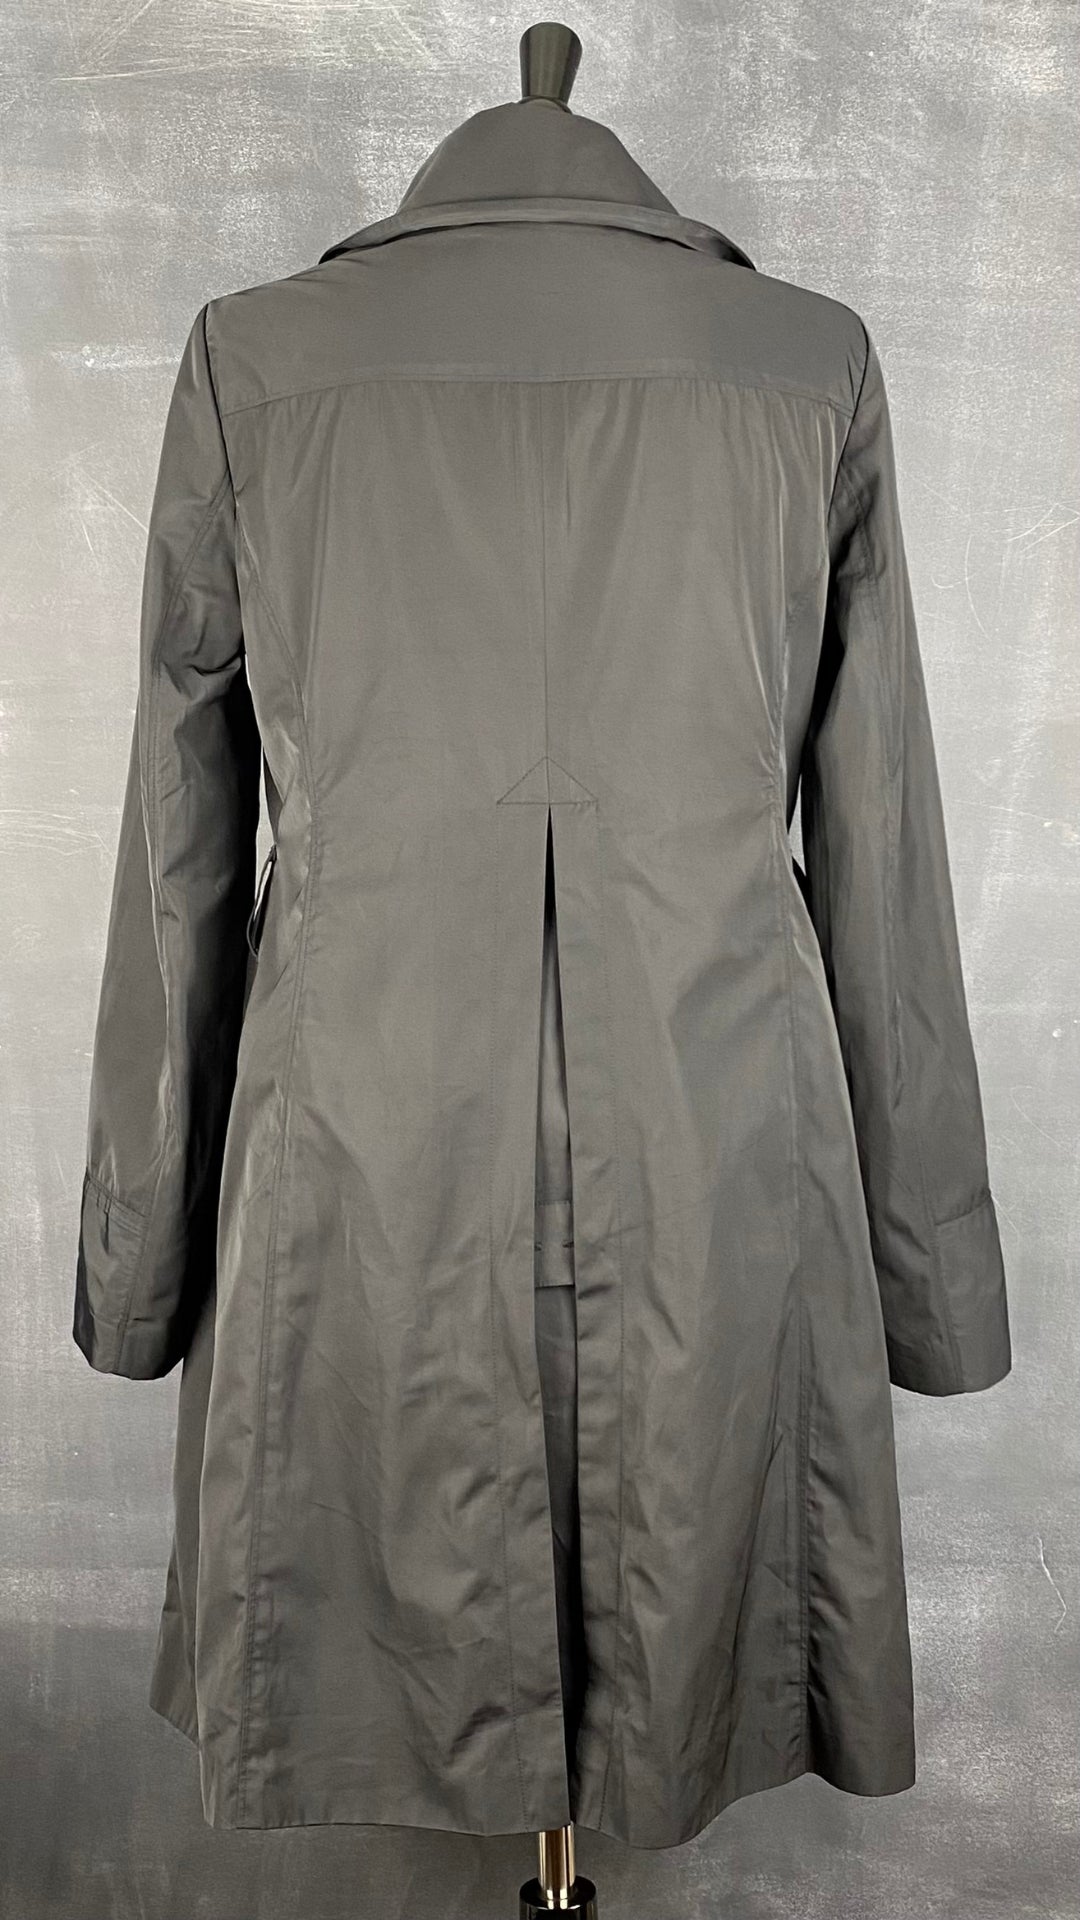 Manteau noir printanier Tristan, taille s/m. Vue de dos.